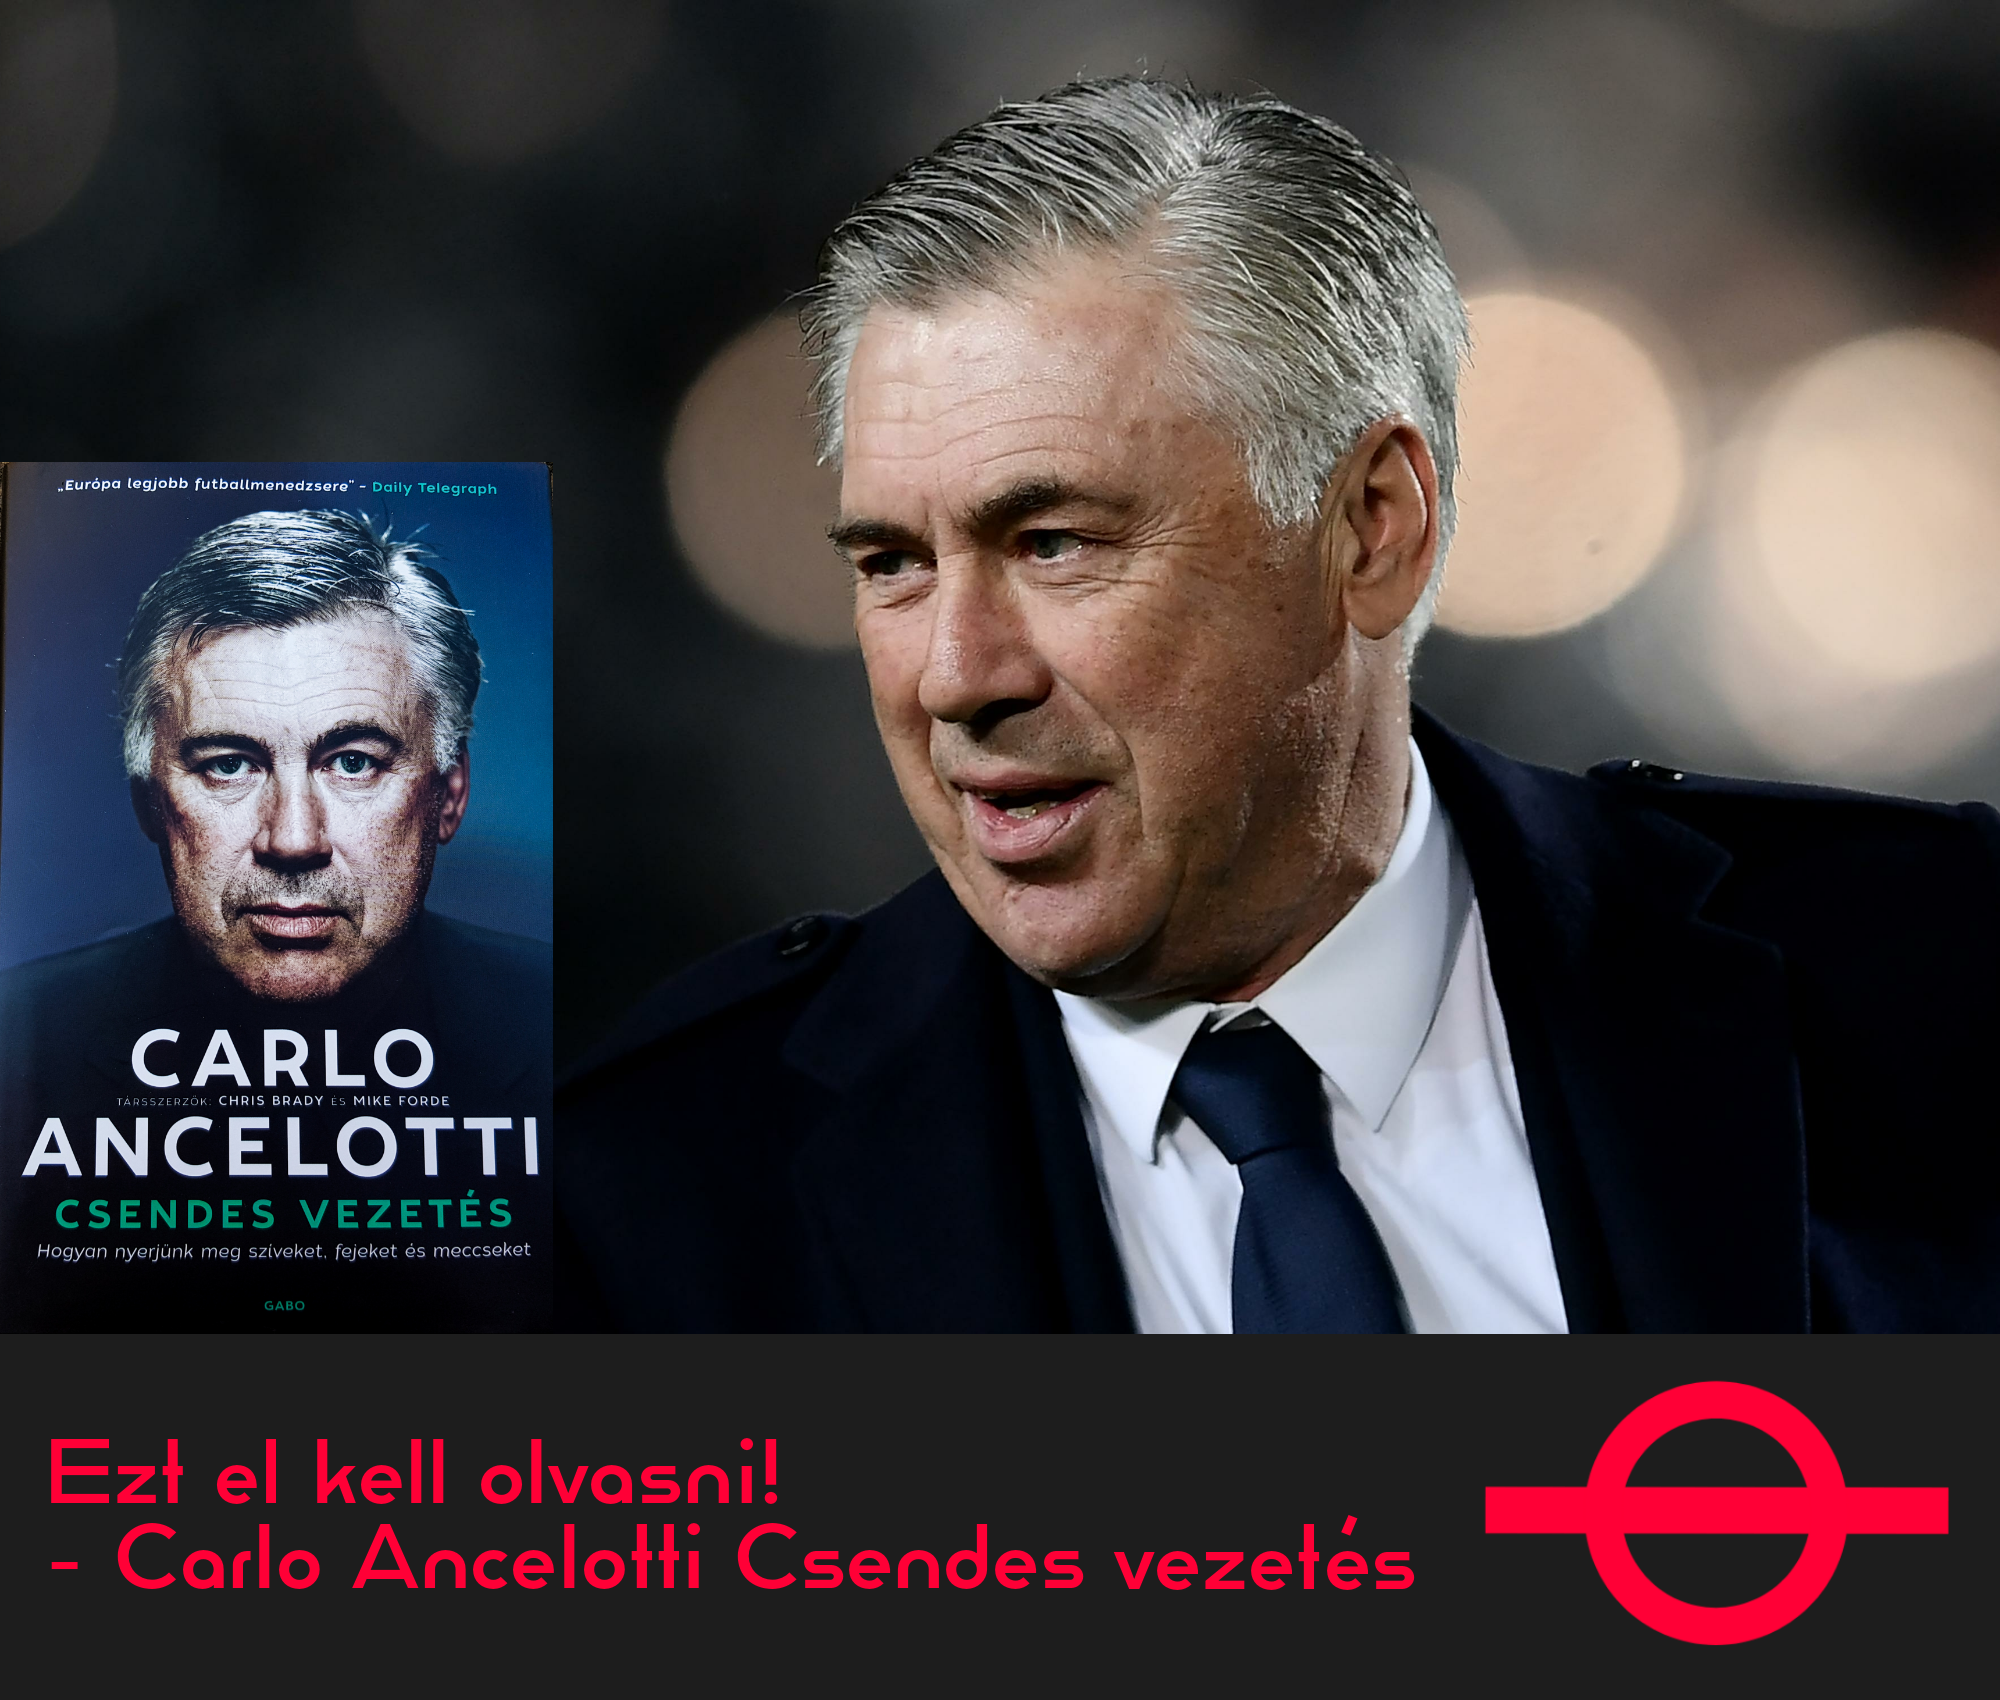  Ezt el kell olvasni! – Carlo Ancelotti Csendes vezetés